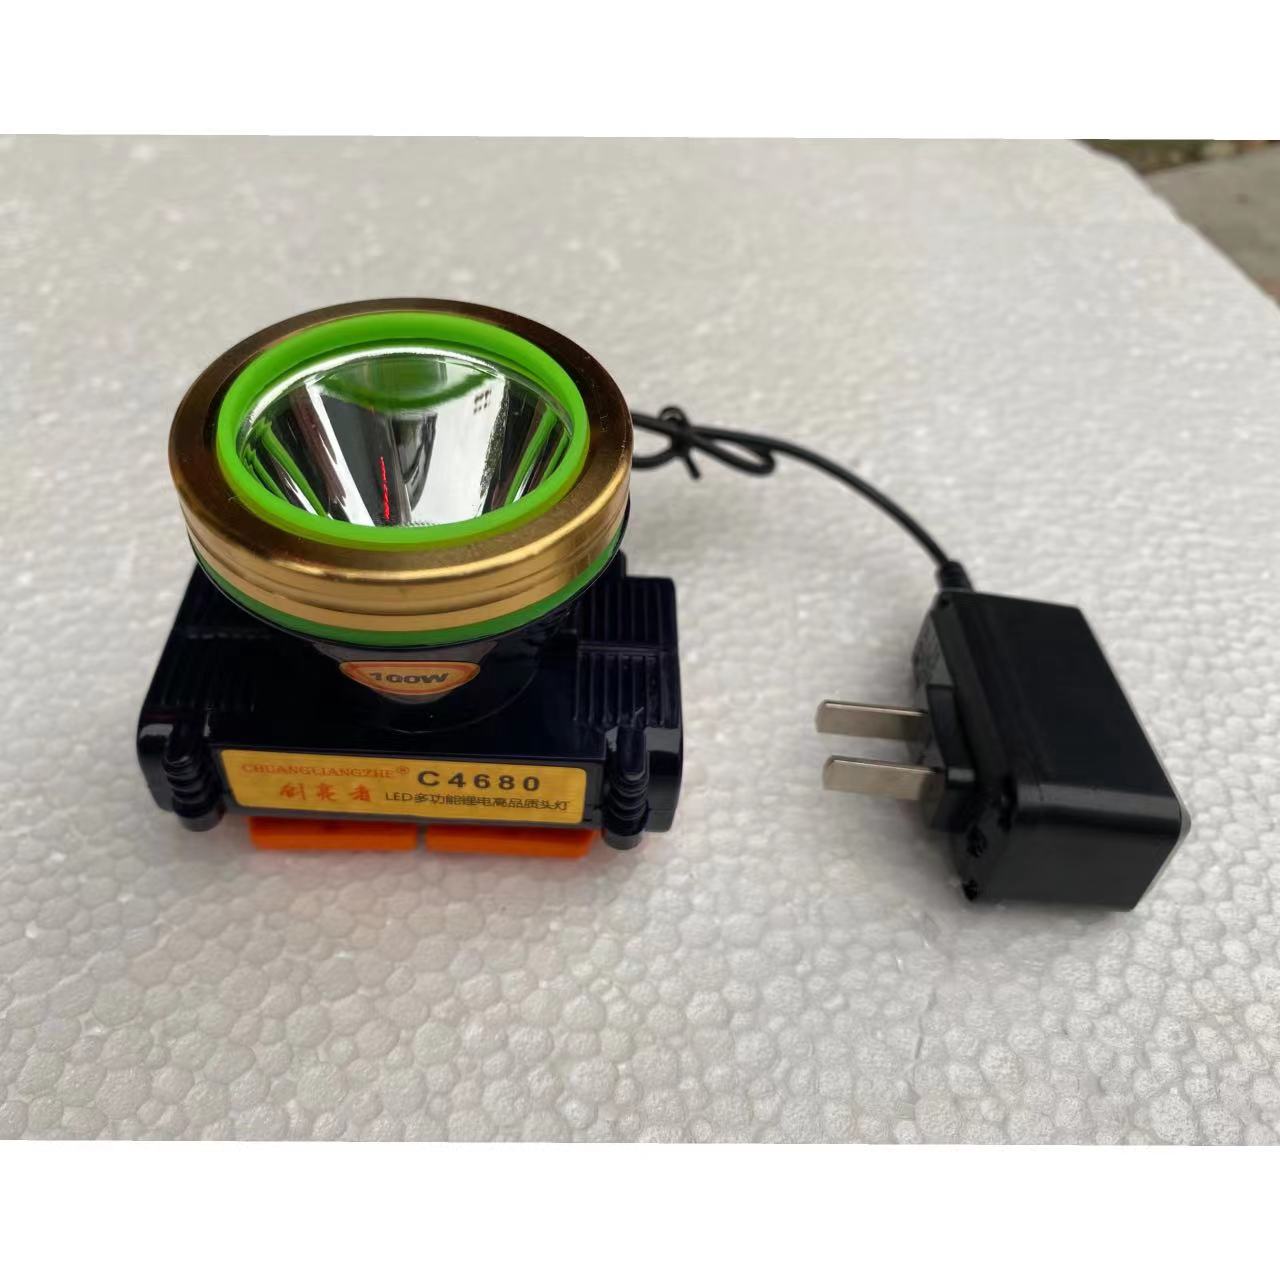 创亮者户外头灯充电器圆孔C4680智能快充通用型带指示灯充电器 - 图1